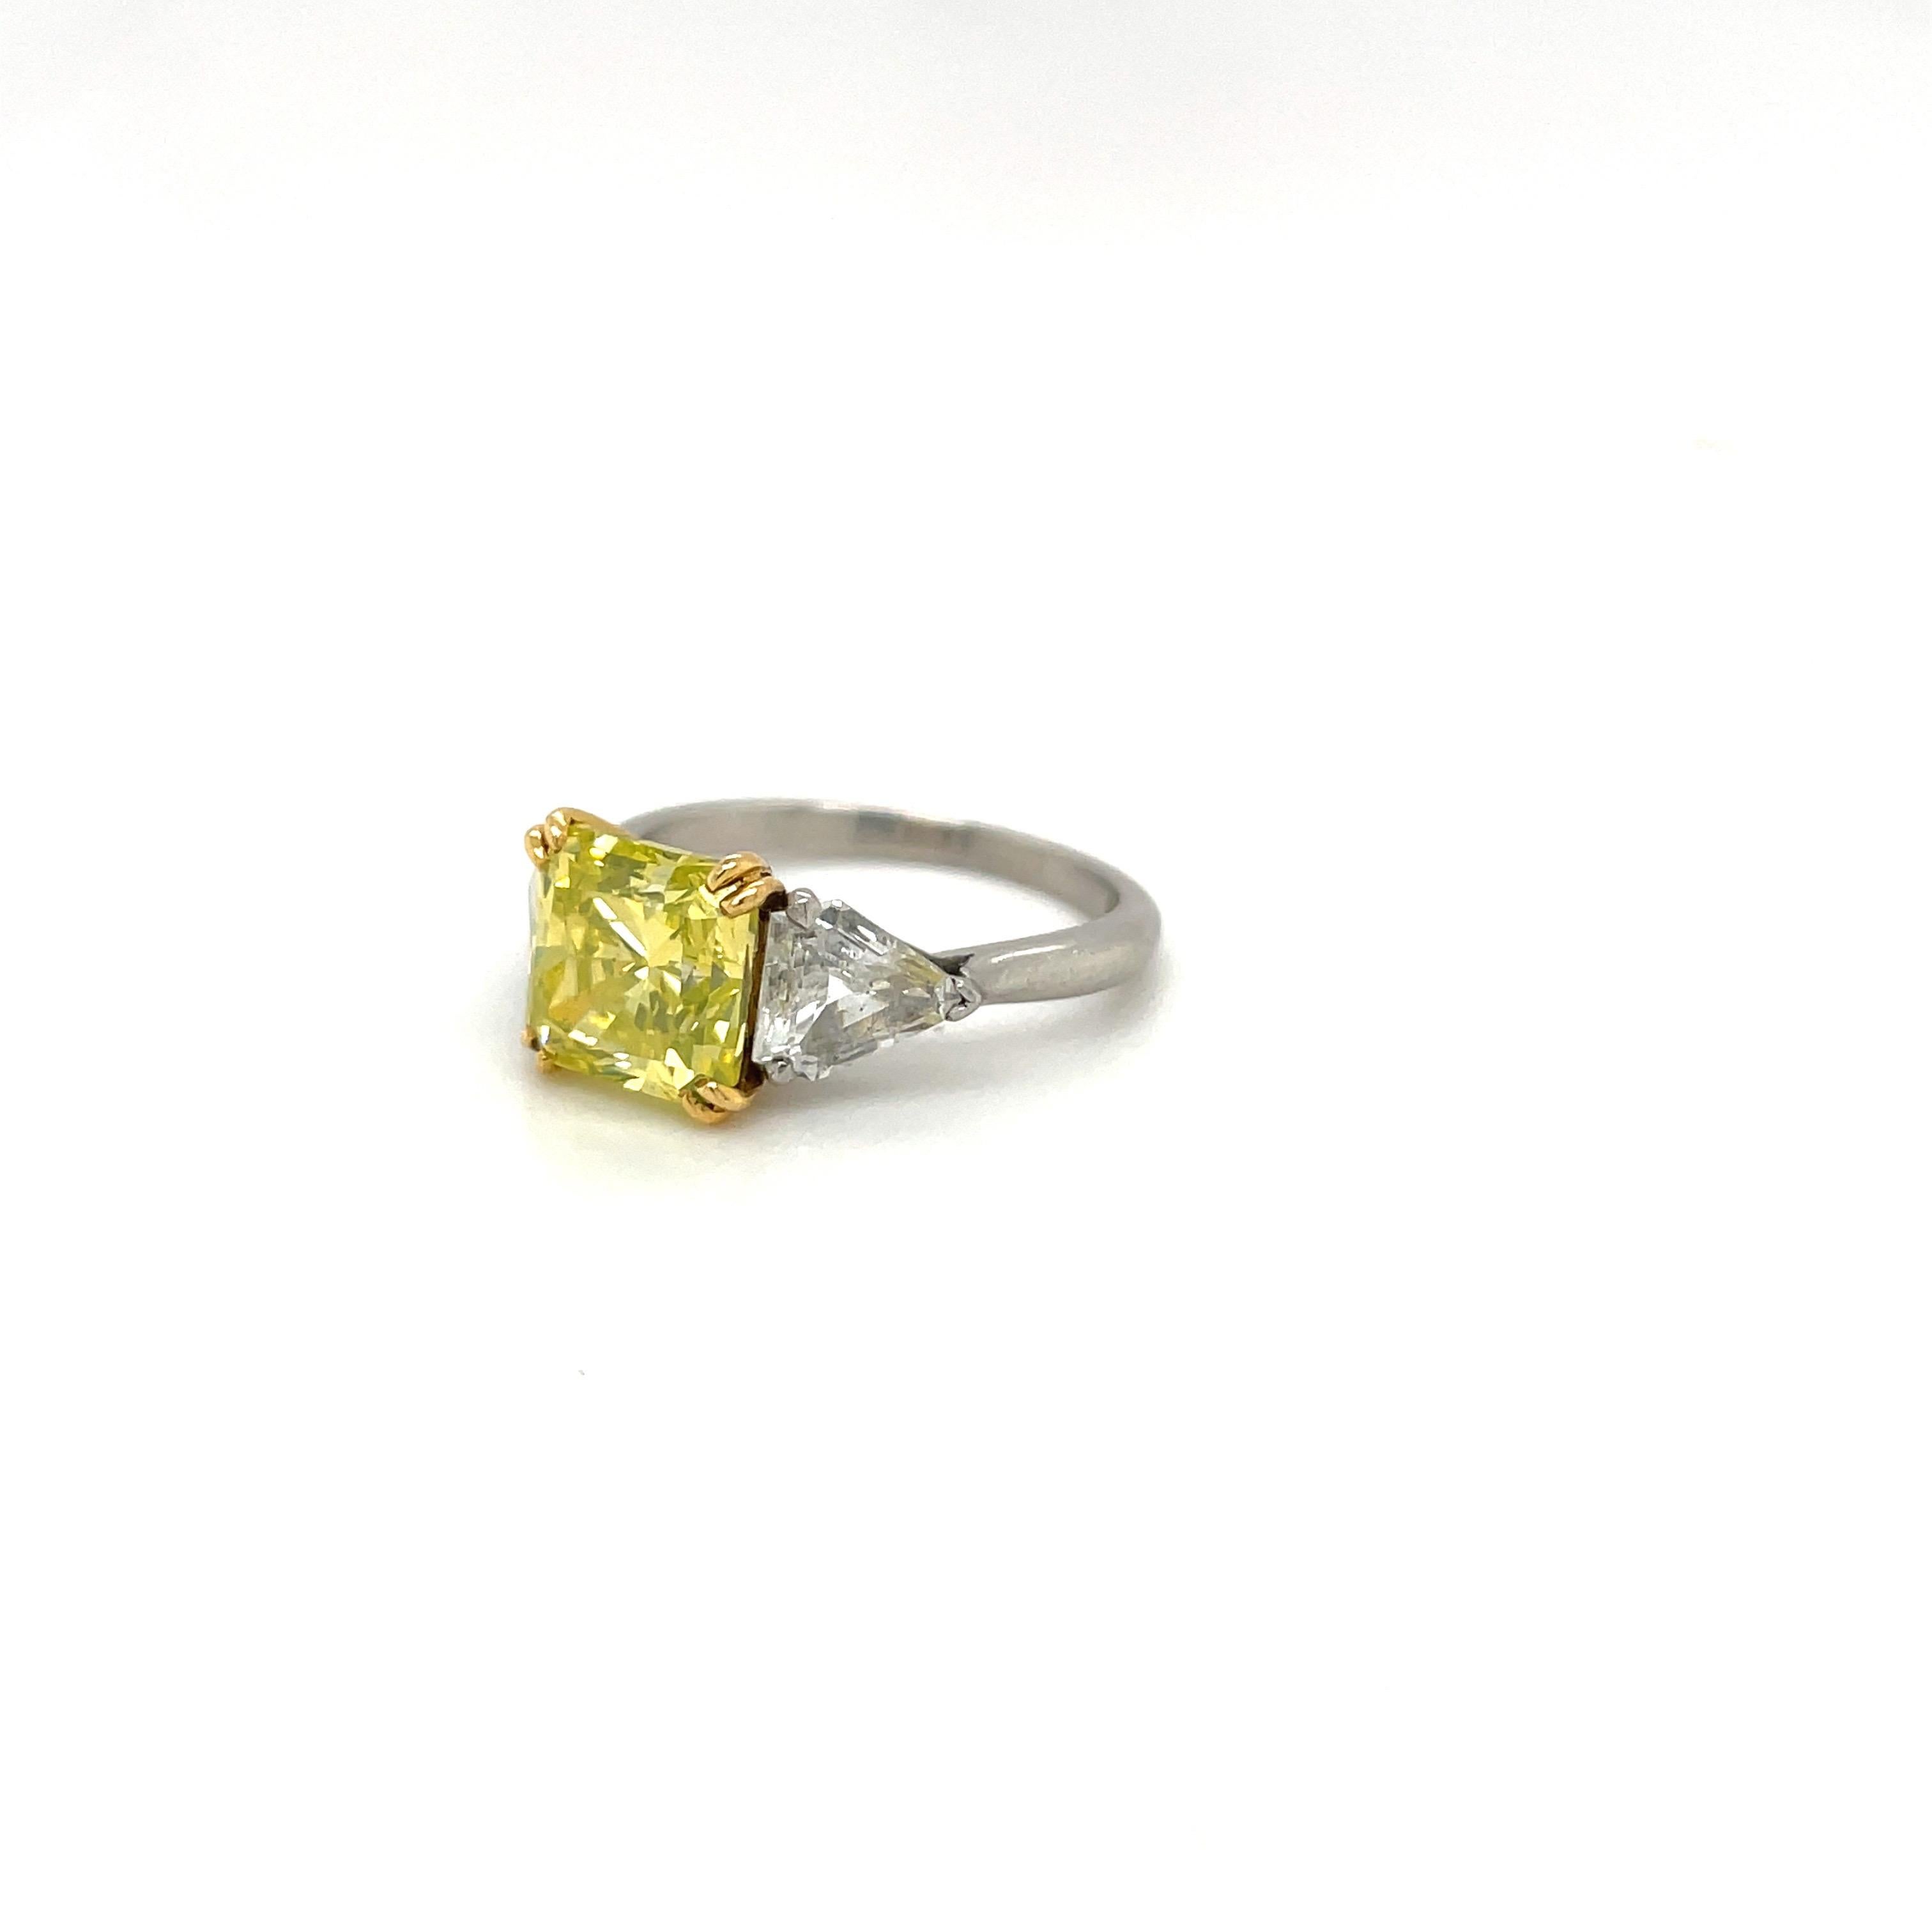 Rare diamant de couleur naturelle vert intense-jaune radiant monté avec des pierres latérales en diamant blanc taille cerf-volant. Serti en platine et en or jaune 18 carats.
Poids du diamant central : 3,06 carats.
Poids du diamant blanc : 0,91 ct